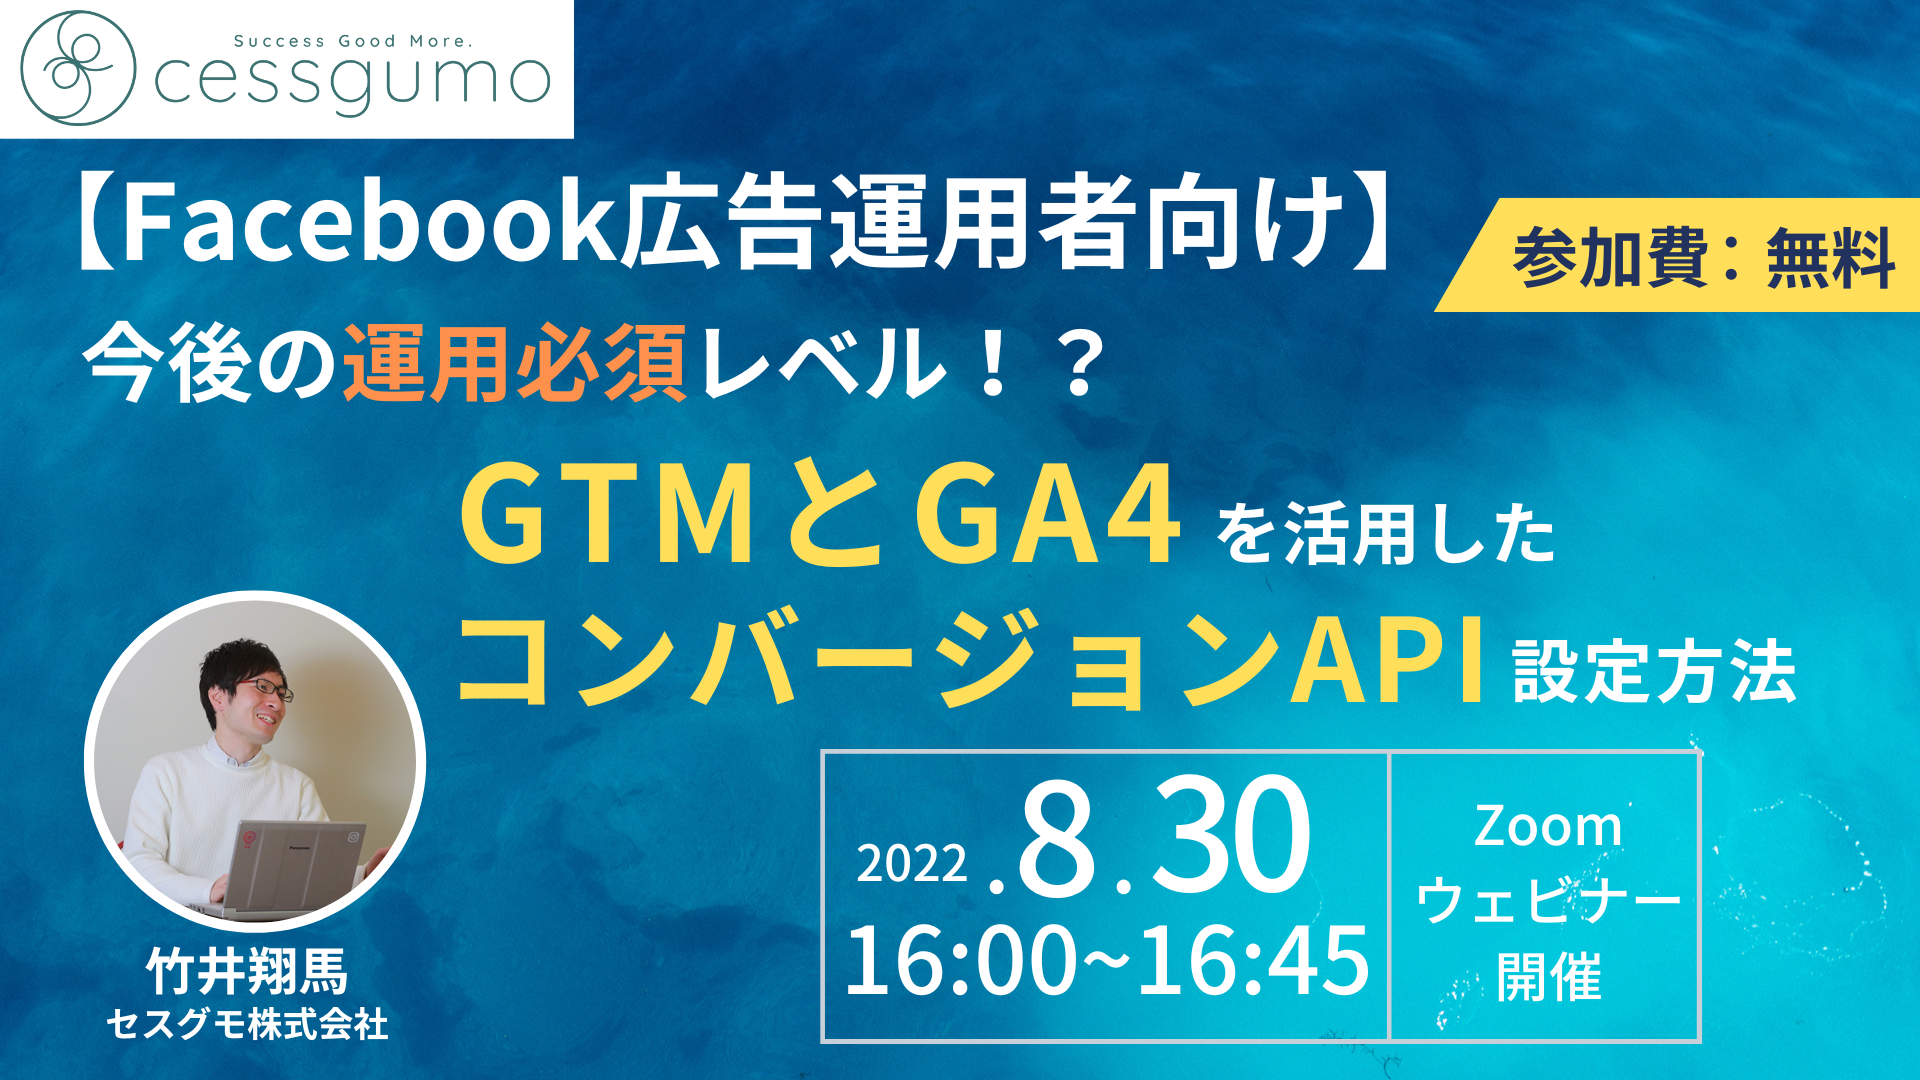 【Facebook広告運用者向け】GTMとGA4を活用したコンバージョンAPIの設定方法